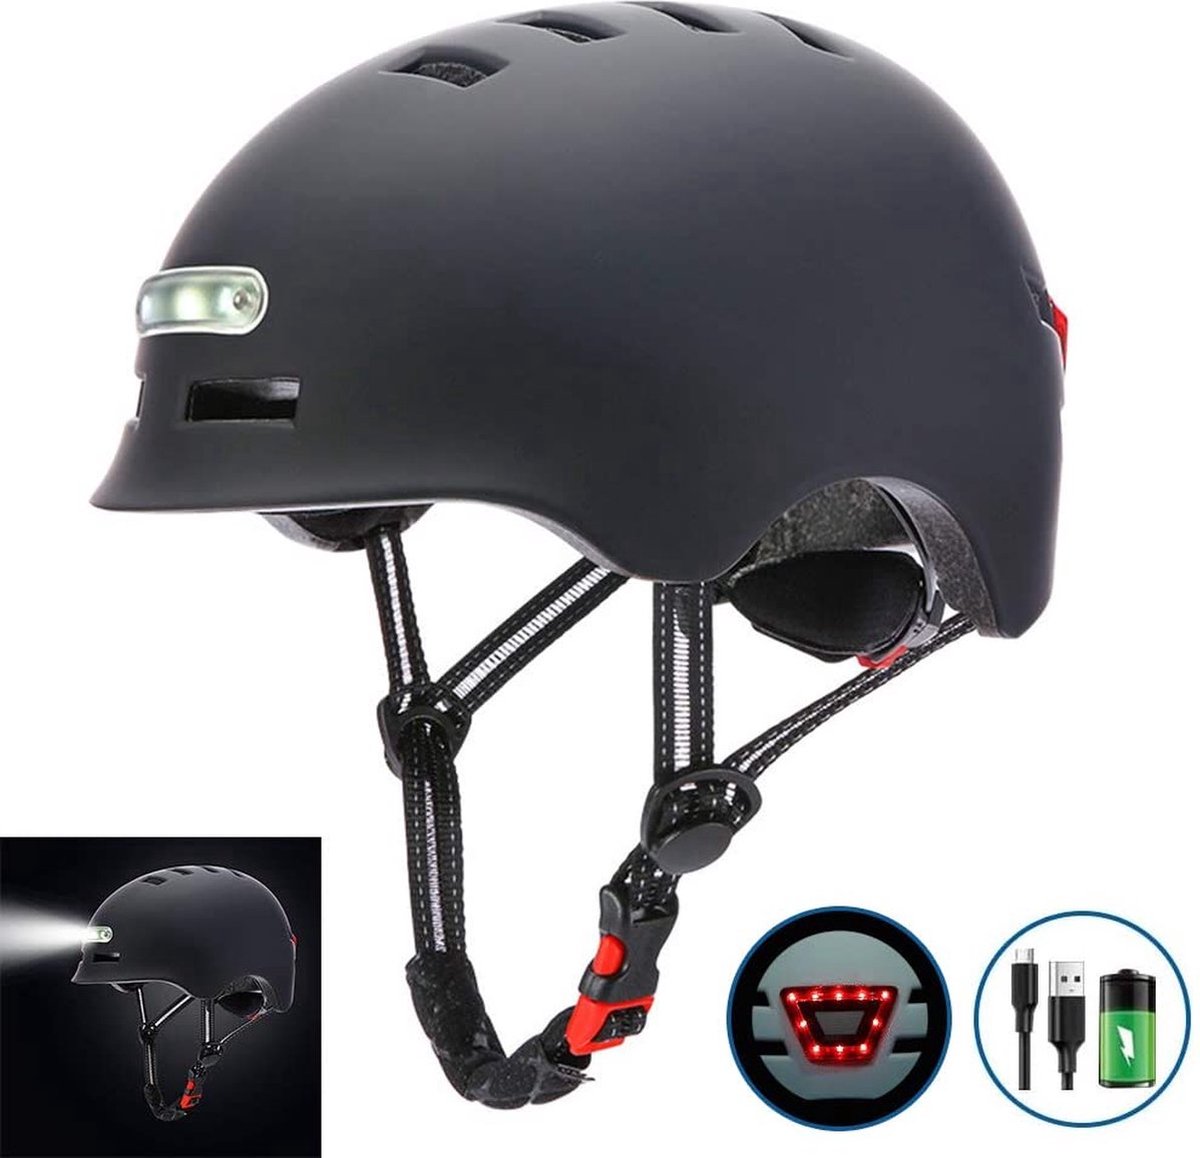 Fietshelm - Met voor- en achterlicht-Skatehelm - Maat-L 58-60cm-Helm Mat-Zwart - LED Verlichting